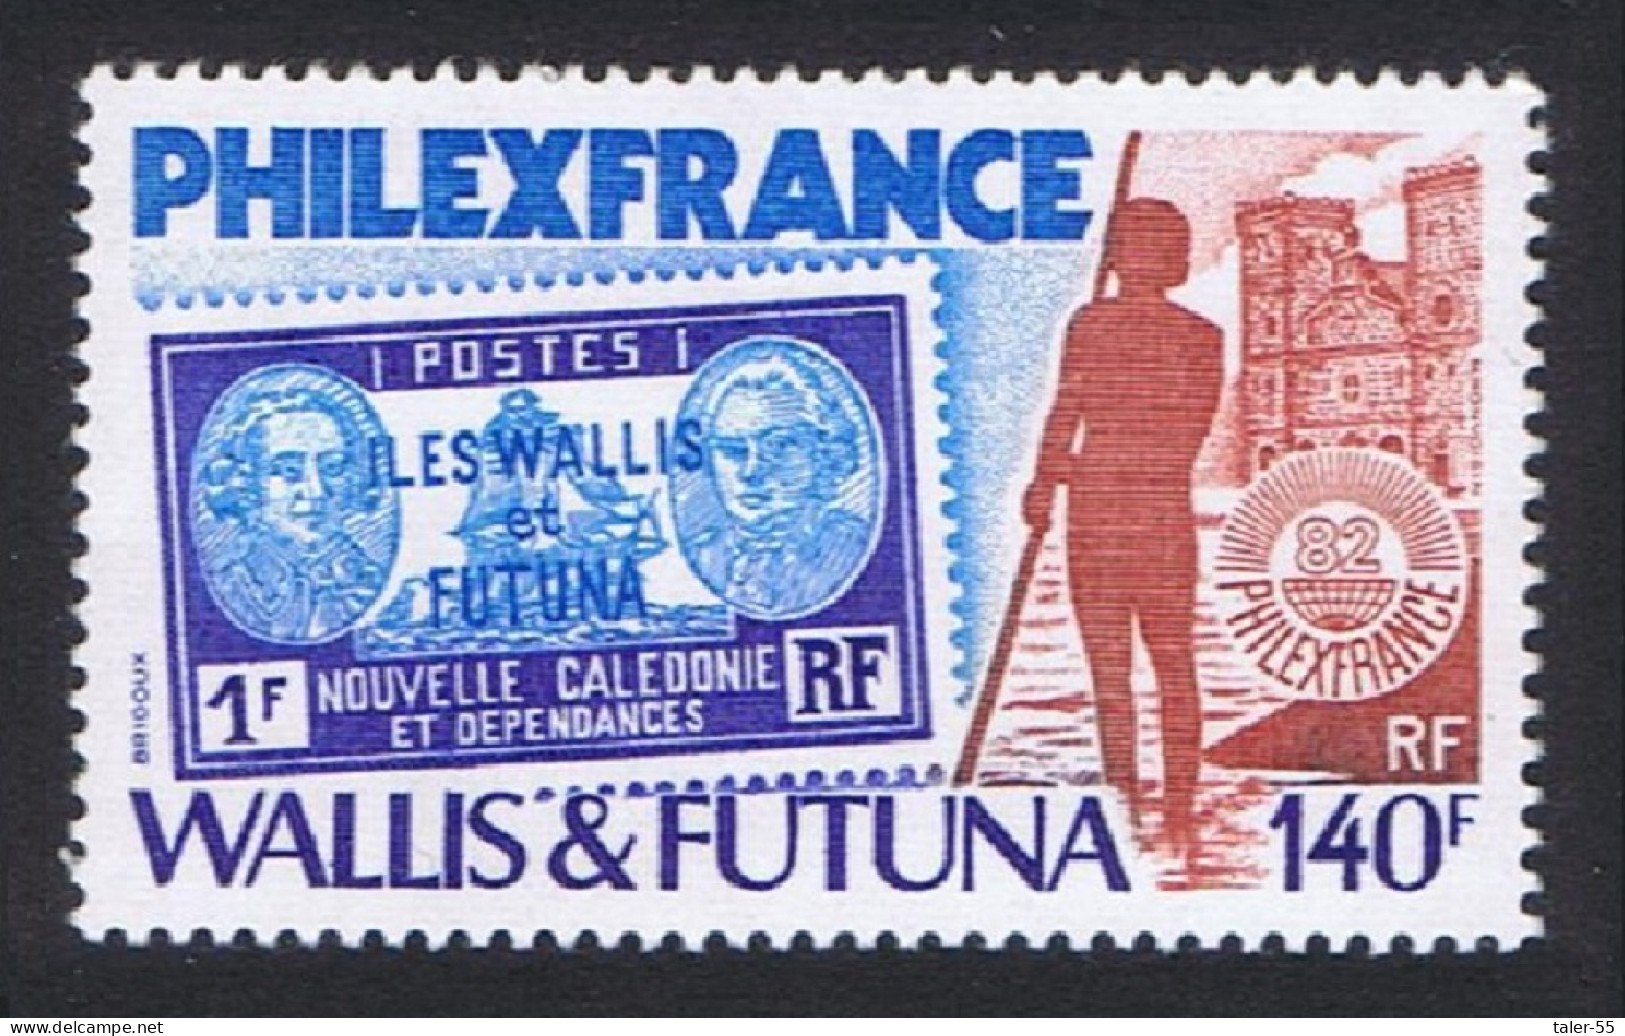 Wallis And Futuna 'Philexfrance 82' Stamp Exhibition 1982 MNH SG#395 Sc#282 - Ungebraucht